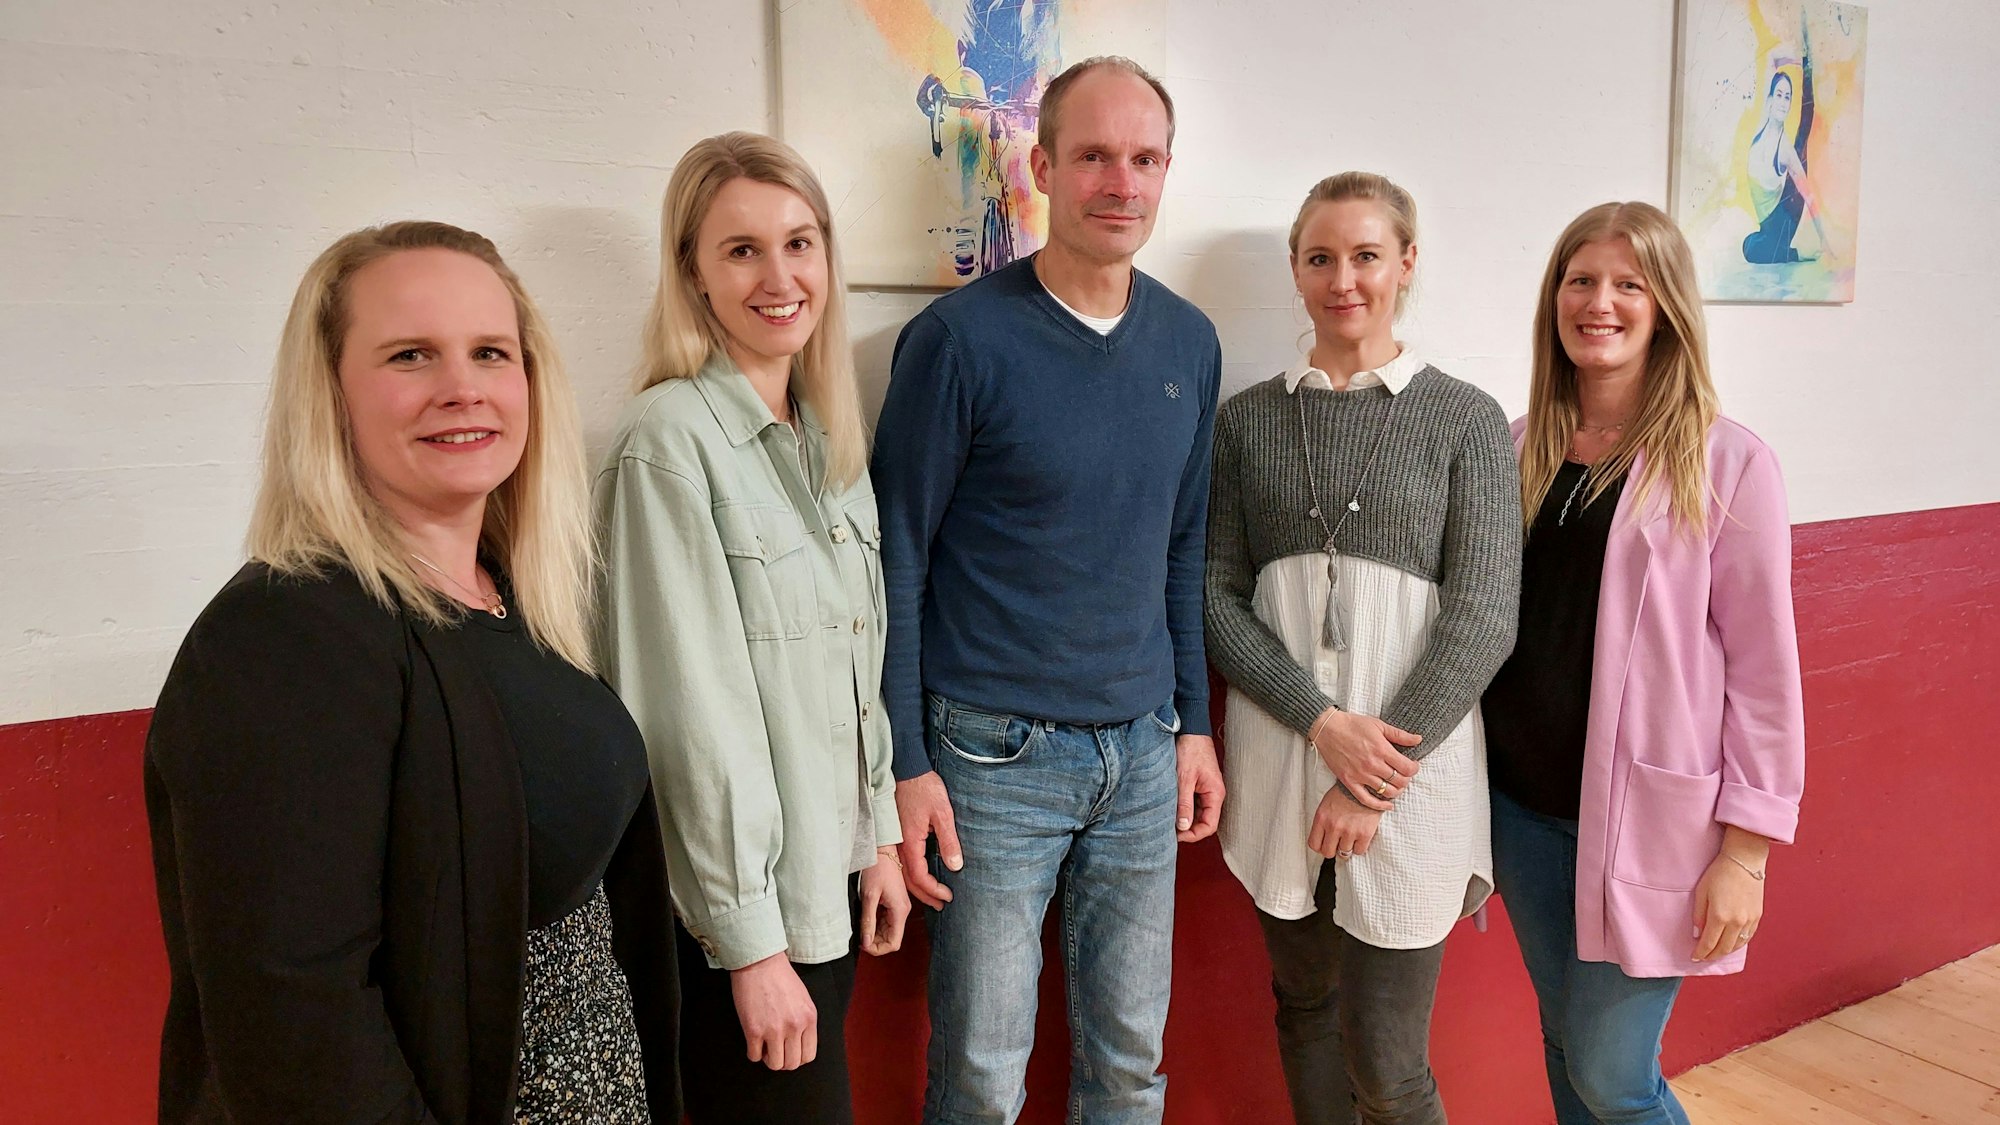 Gruppenbild mit vier Frauen und einem Mann, die zusammen den neuen Vorstand des TV Hülsenbusch bilden.